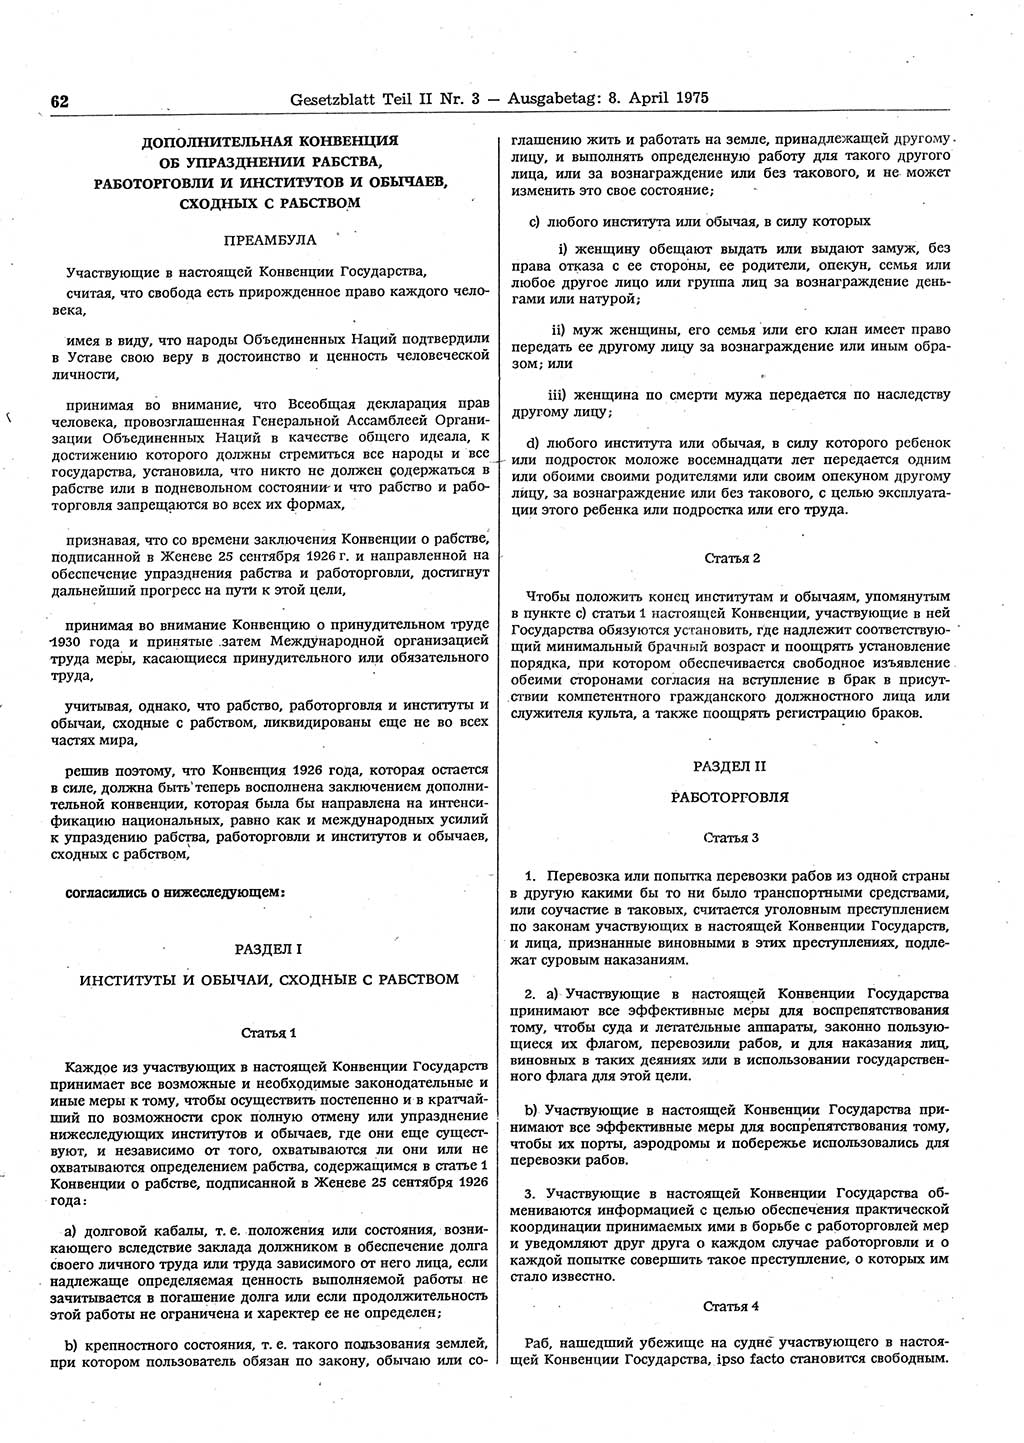 Gesetzblatt (GBl.) der Deutschen Demokratischen Republik (DDR) Teil ⅠⅠ 1975, Seite 62 (GBl. DDR ⅠⅠ 1975, S. 62)